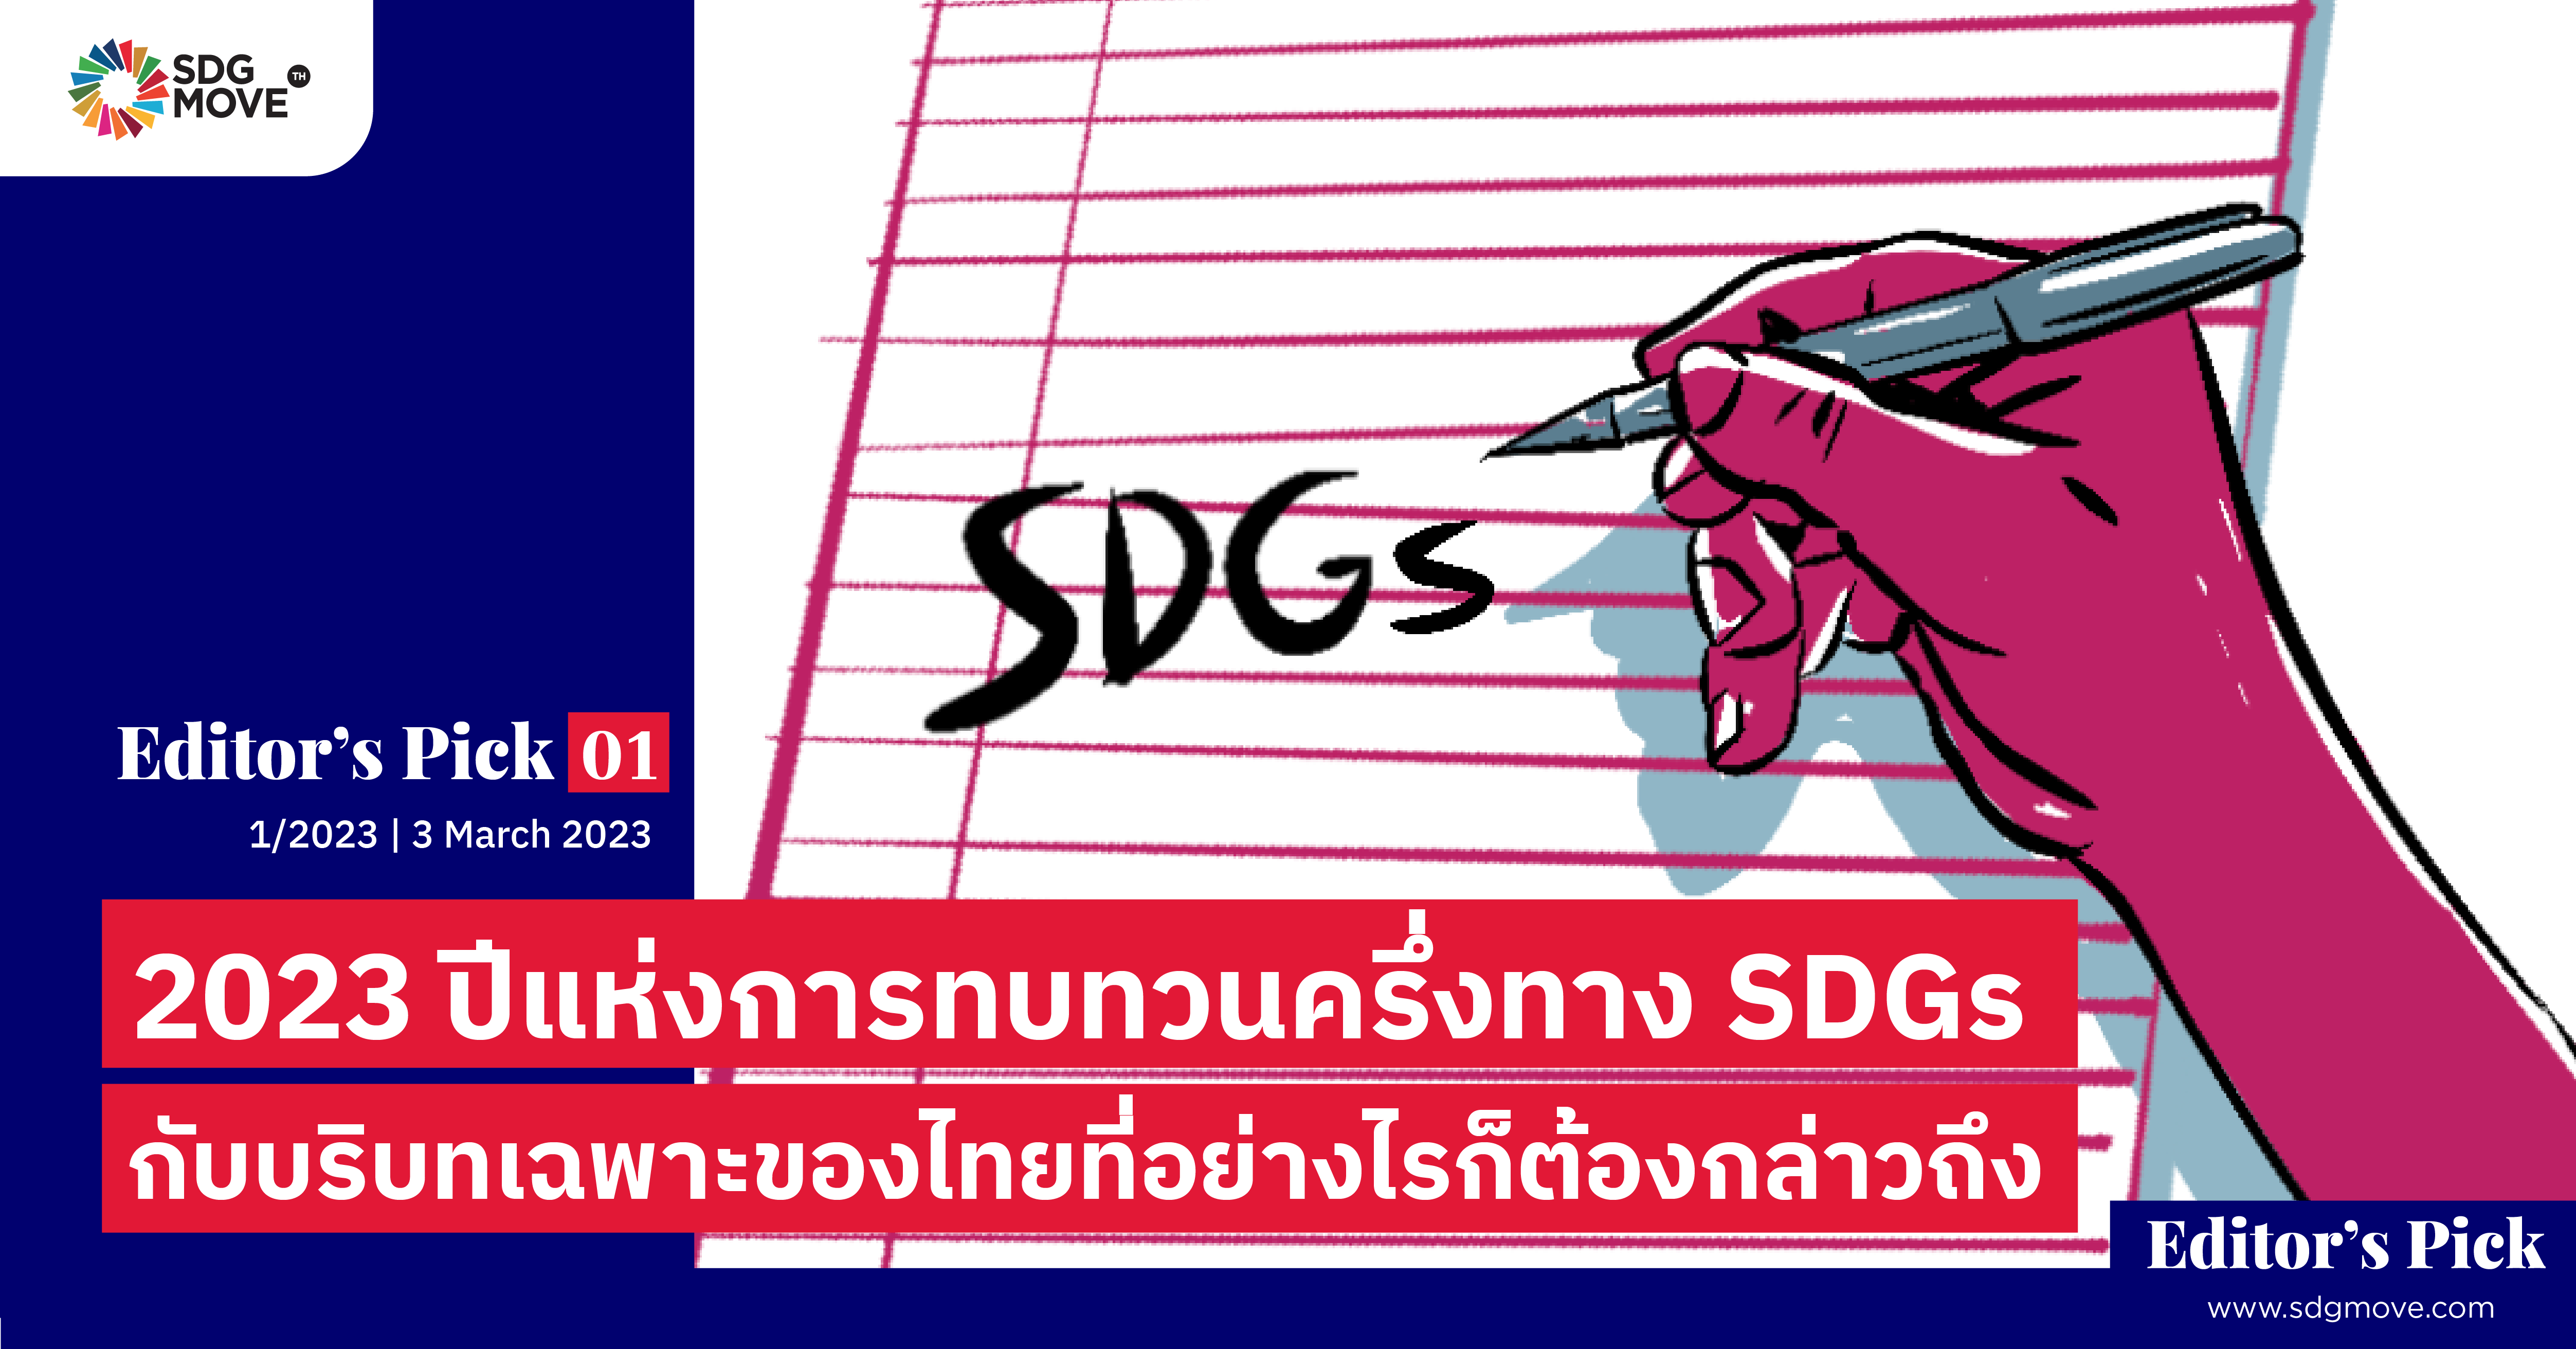 Editor’s pick 01 | 2023 ปีแห่งการทบทวนครึ่งทาง SDGs กับ บริบทเฉพาะของไทยที่อย่างไรก็ต้องกล่าวถึง